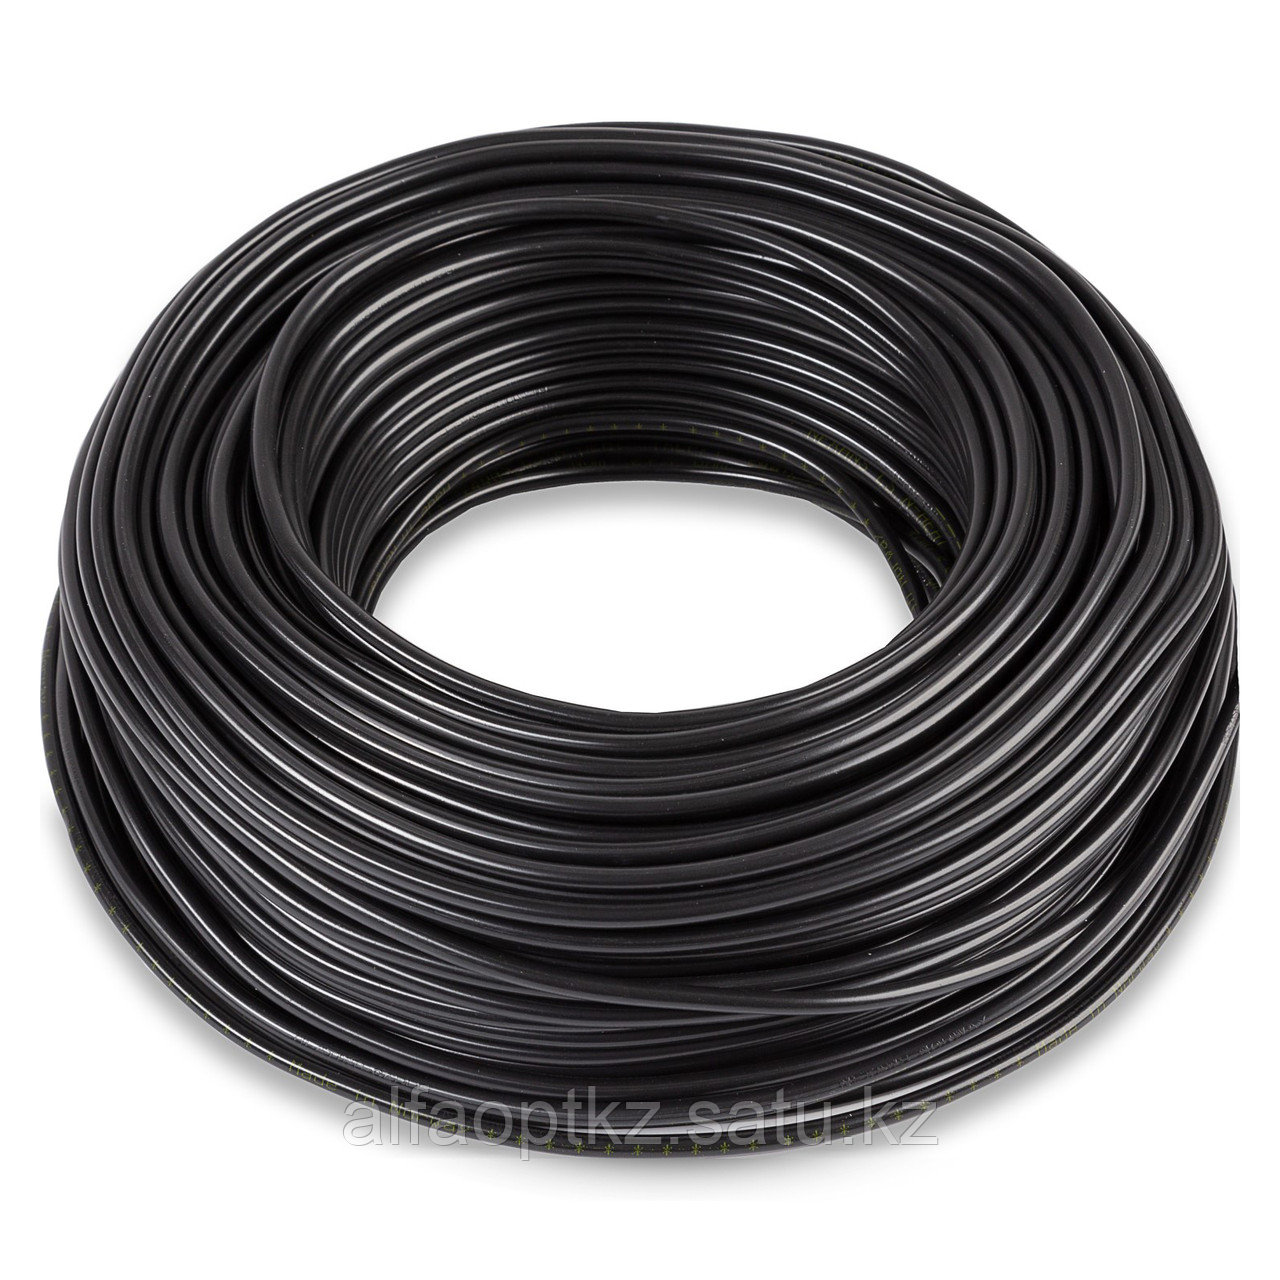 Одножильный отрезной нагревательный кабель TXLP 1,4 OHM/M (BLACK)